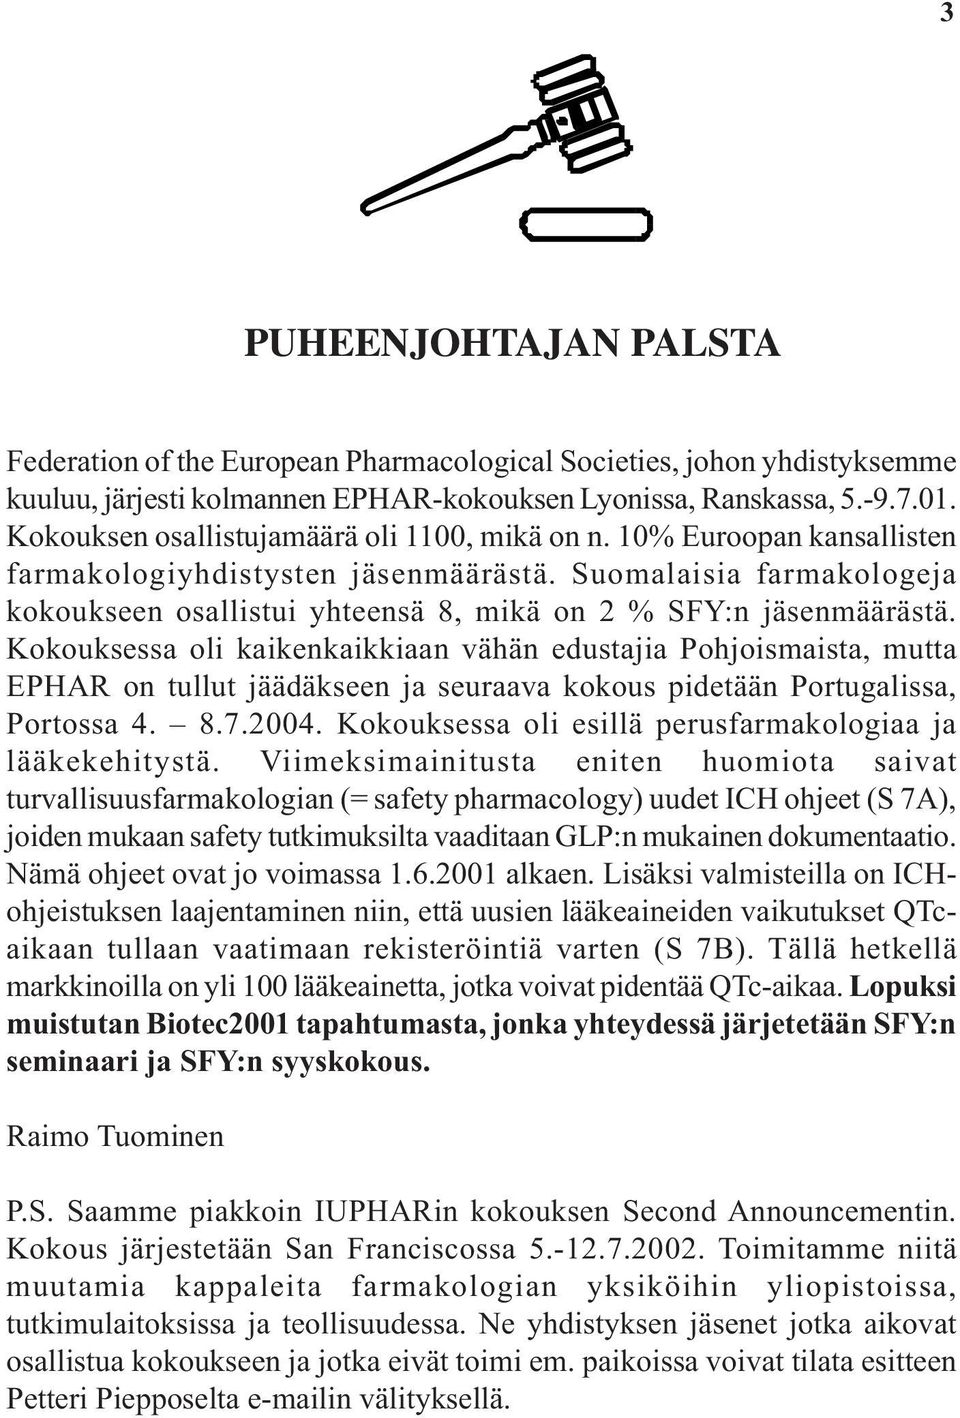 Suomalaisia farmakologeja kokoukseen osallistui yhteensä 8, mikä on 2 % SFY:n jäsenmäärästä.